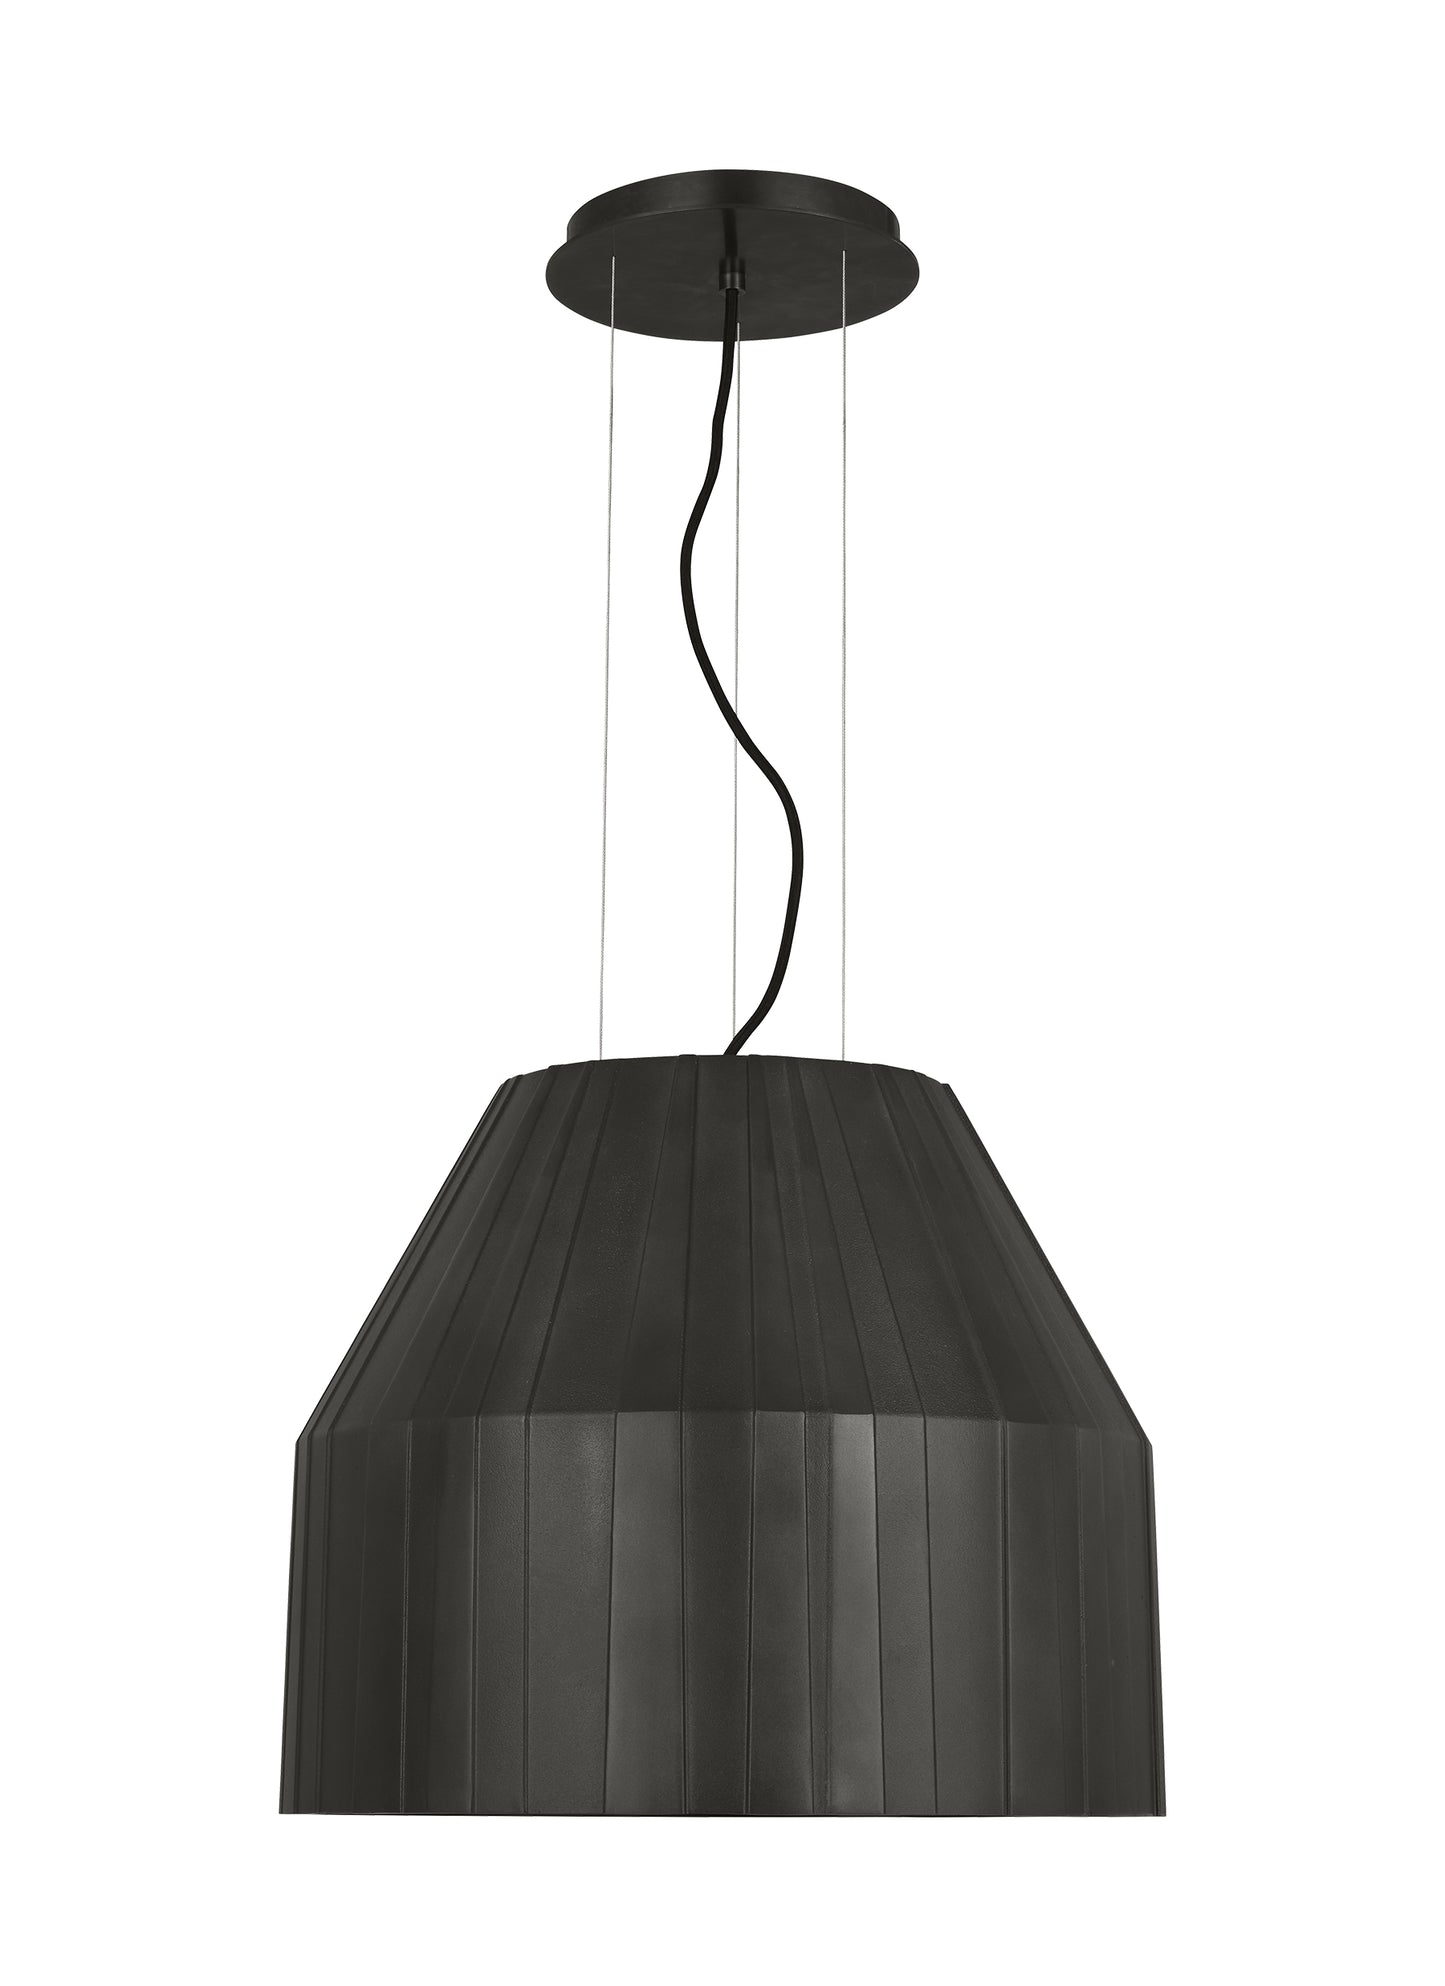 Bling Pendant Light Extra Large | Visual Comfort Modern - Restaurant Lighting